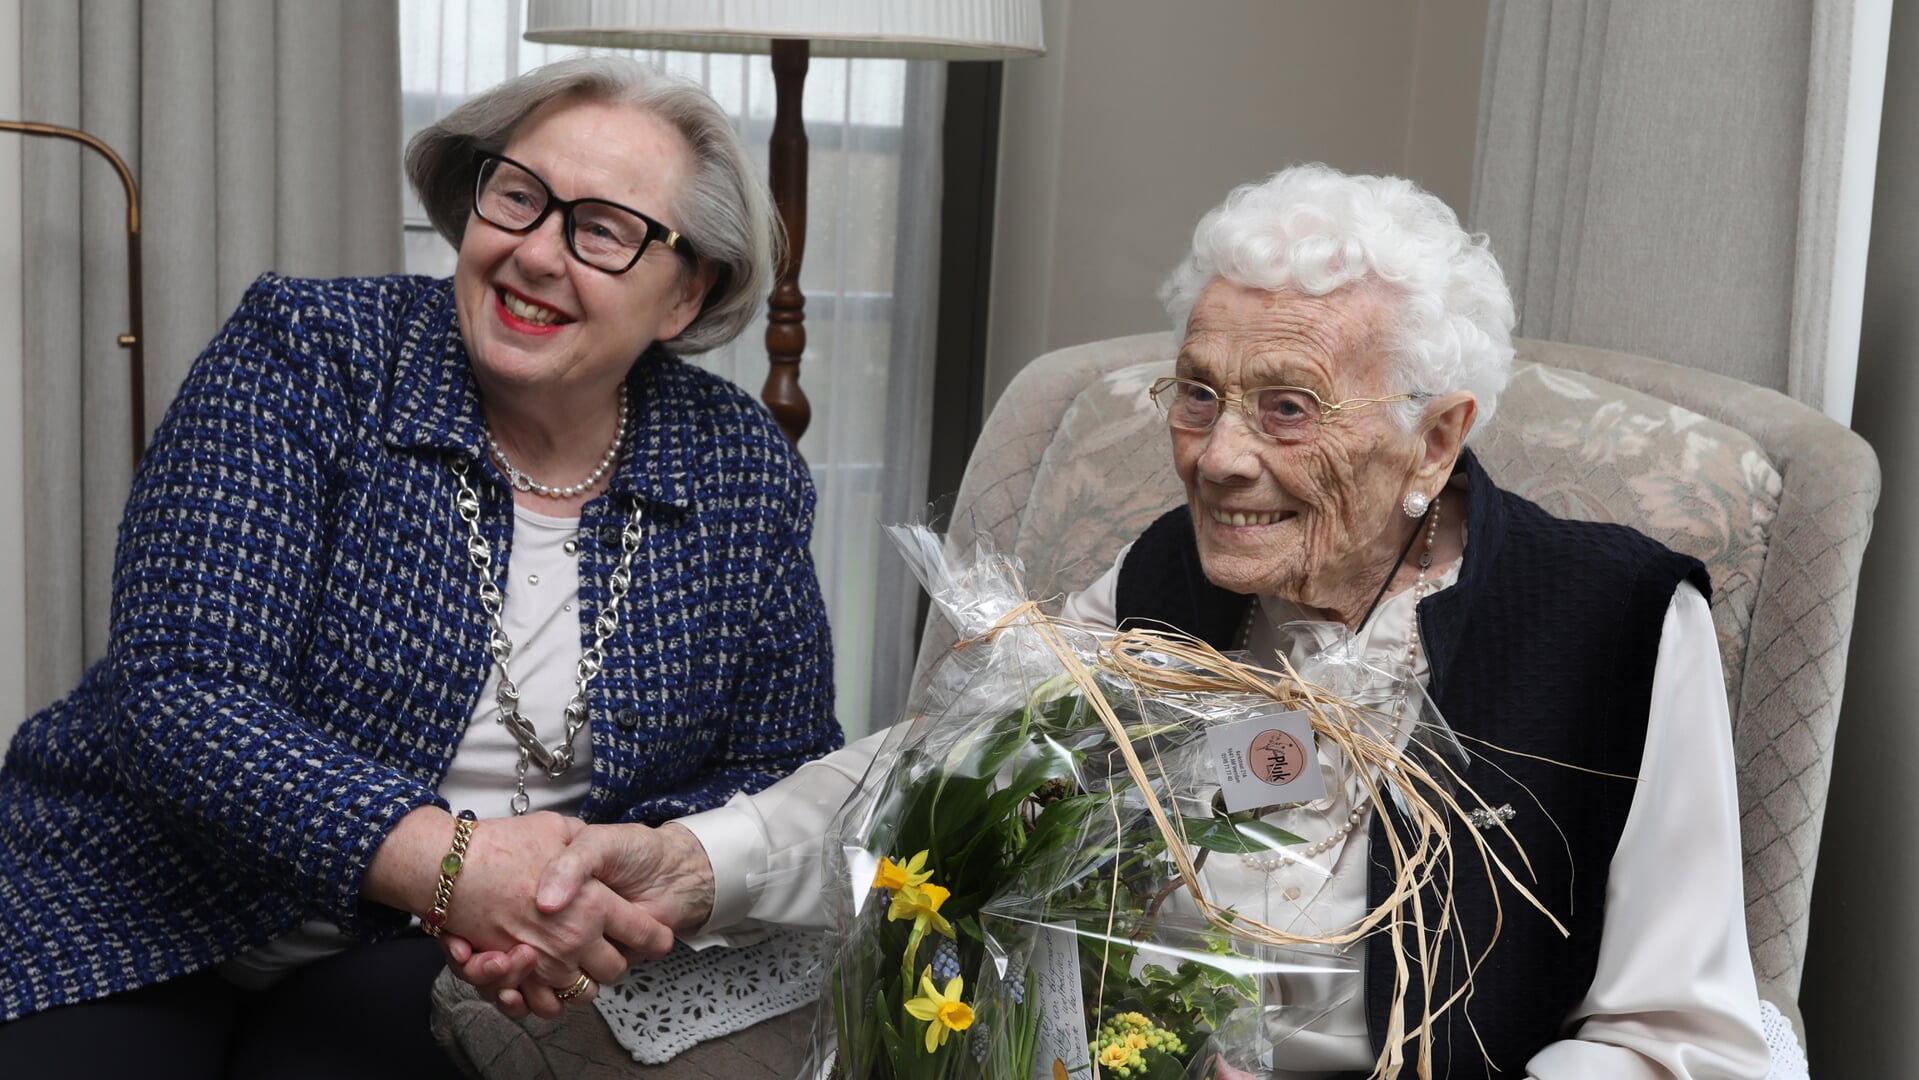 De 105-jarige met burgemeester Korthuis. Foto: Bert Woltjes.